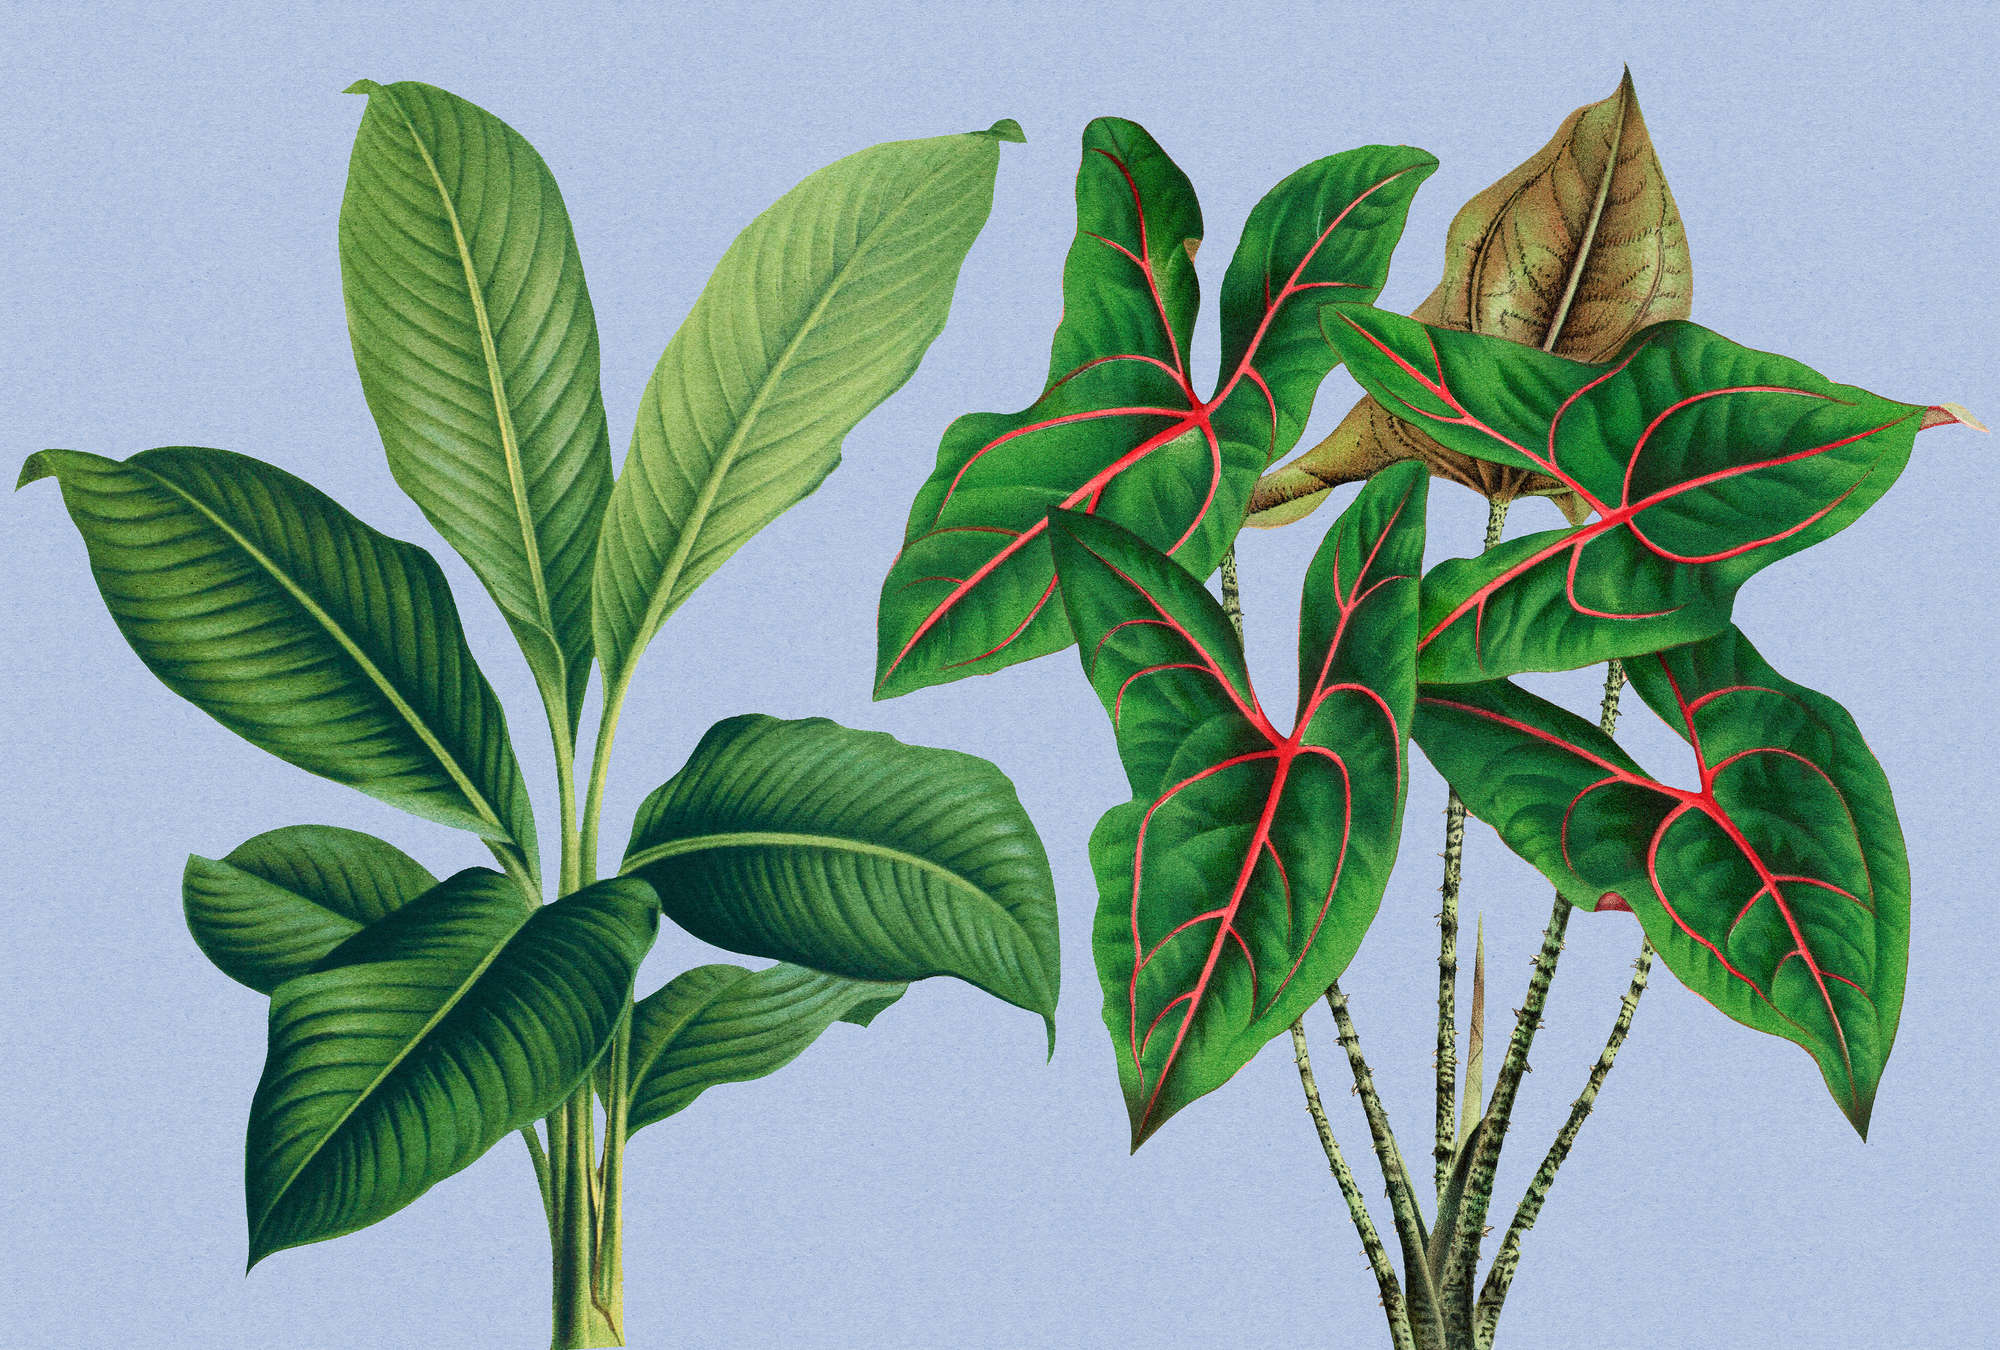             Jardín de hojas 1 - Hojas de papel pintado de fotos azul con plantas tropicales
        